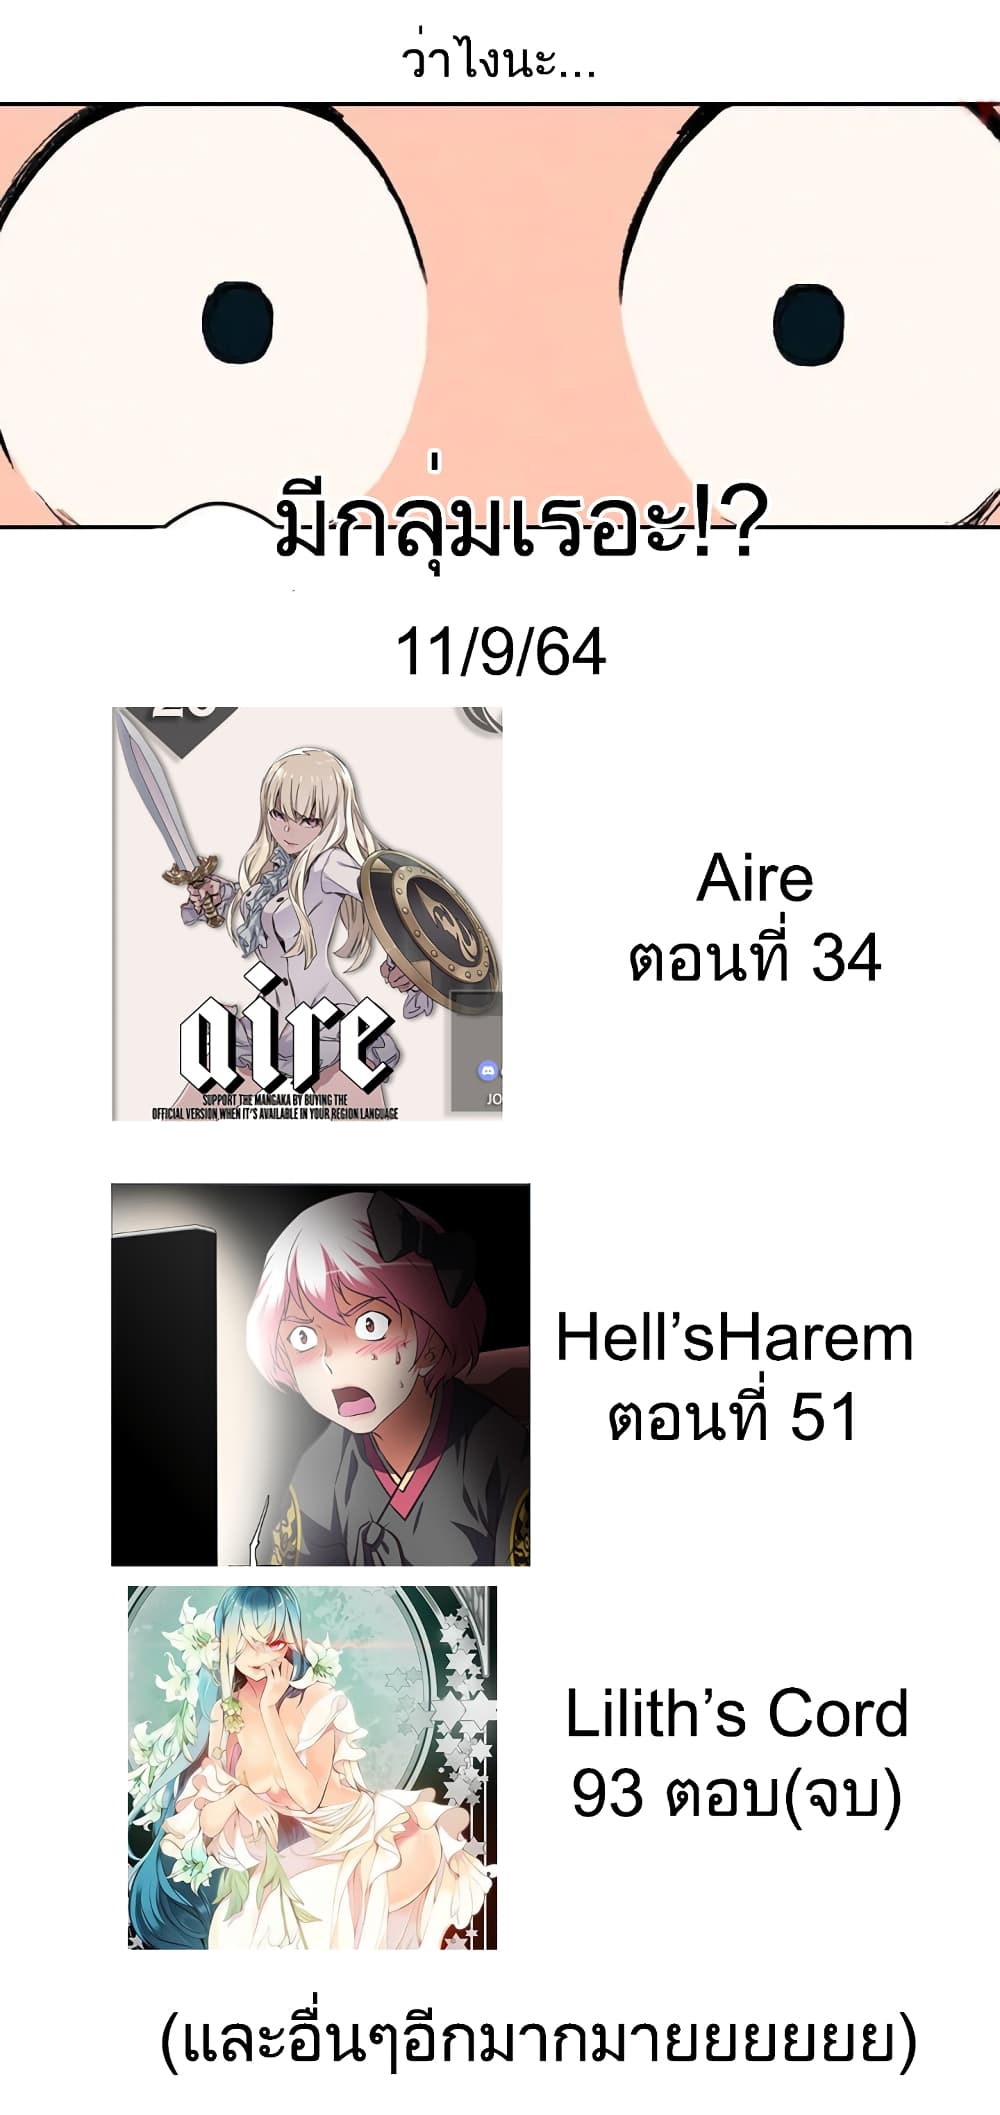 Hell's Harem 34 (10)